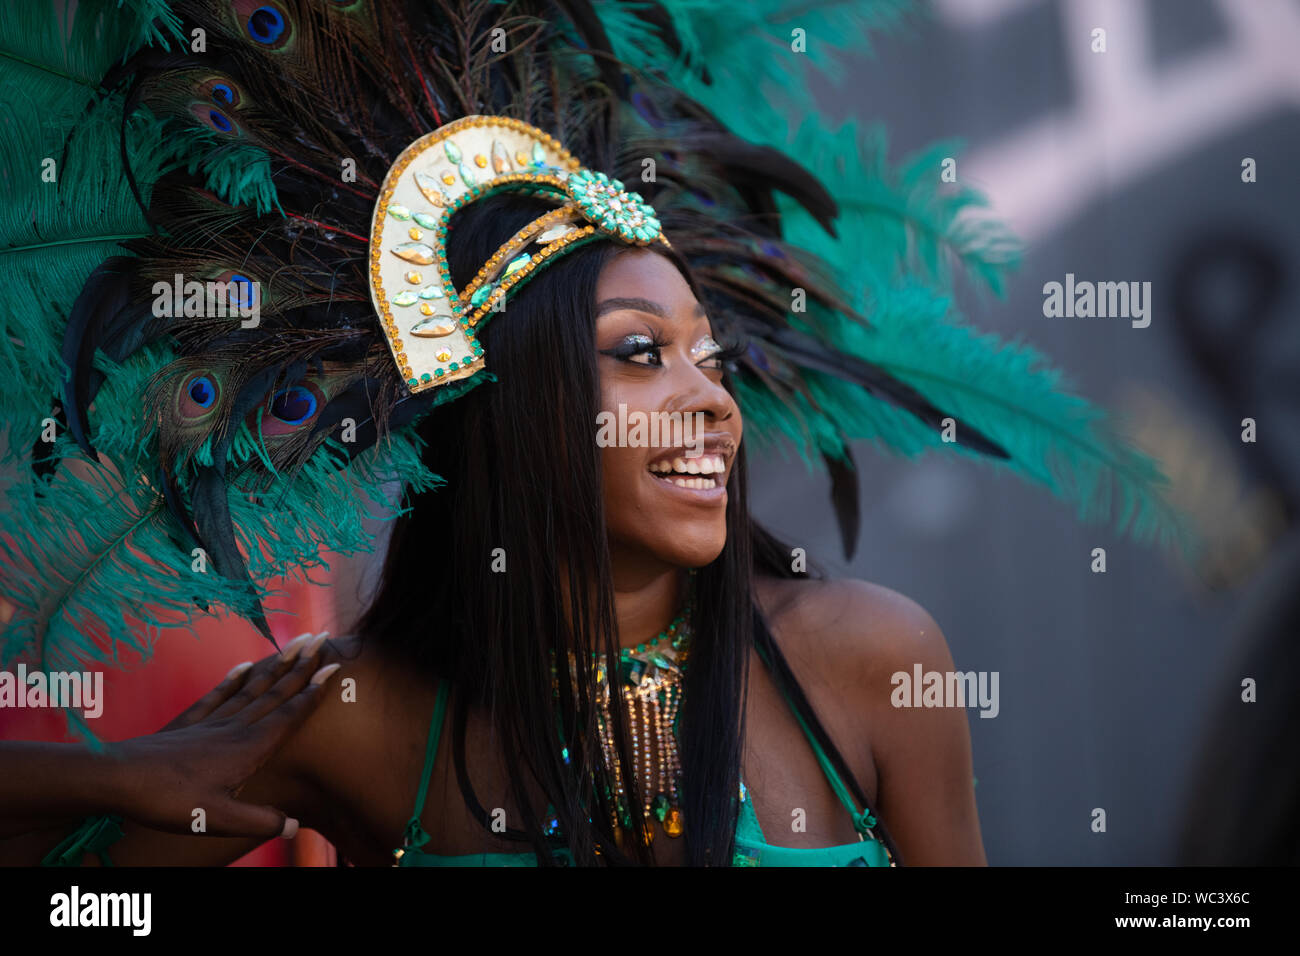 brasil brazilian peacock costume samba dancer ethnic Thames